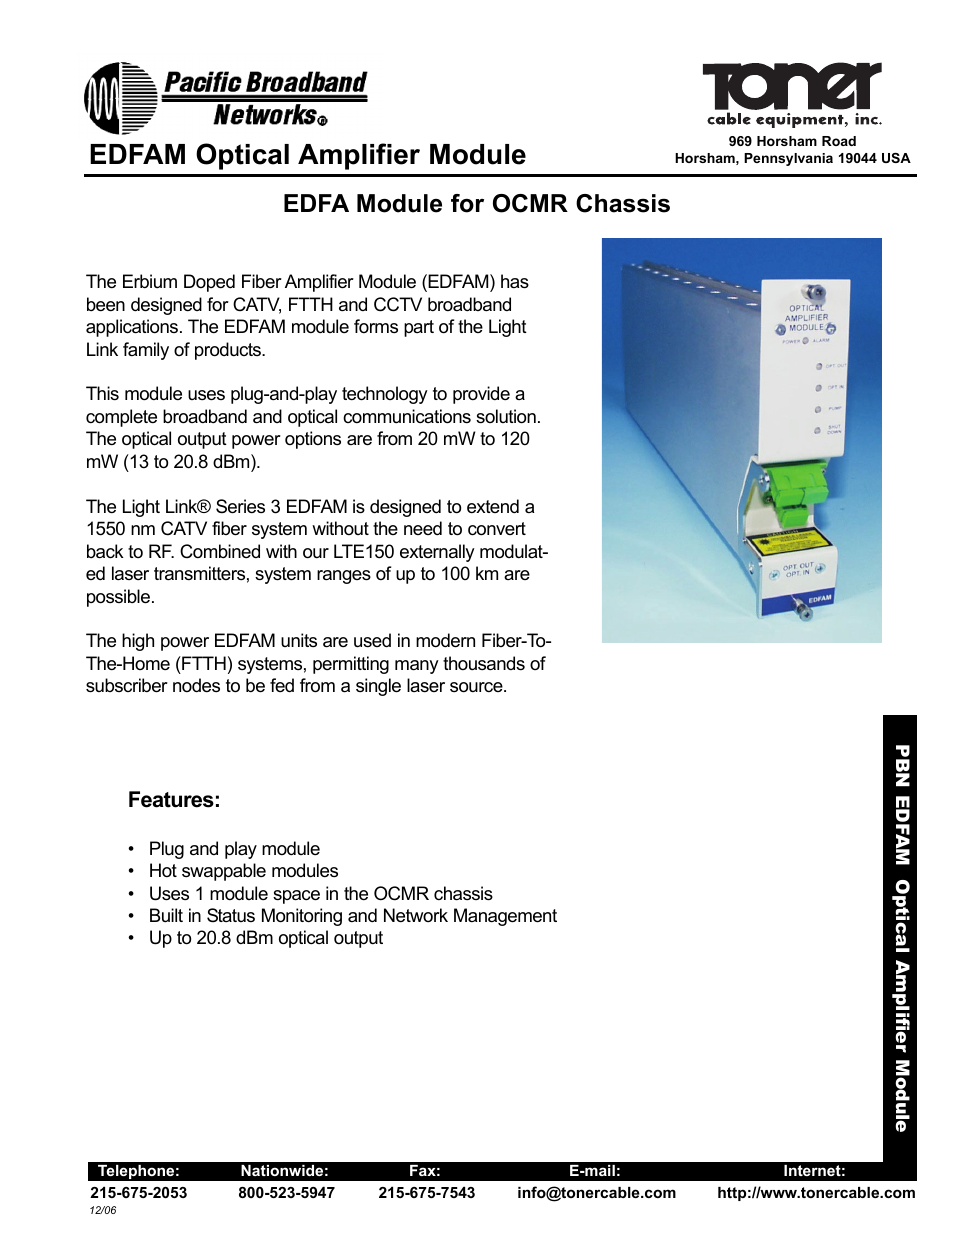 EDFA Fiber Optic Amplifiers Module